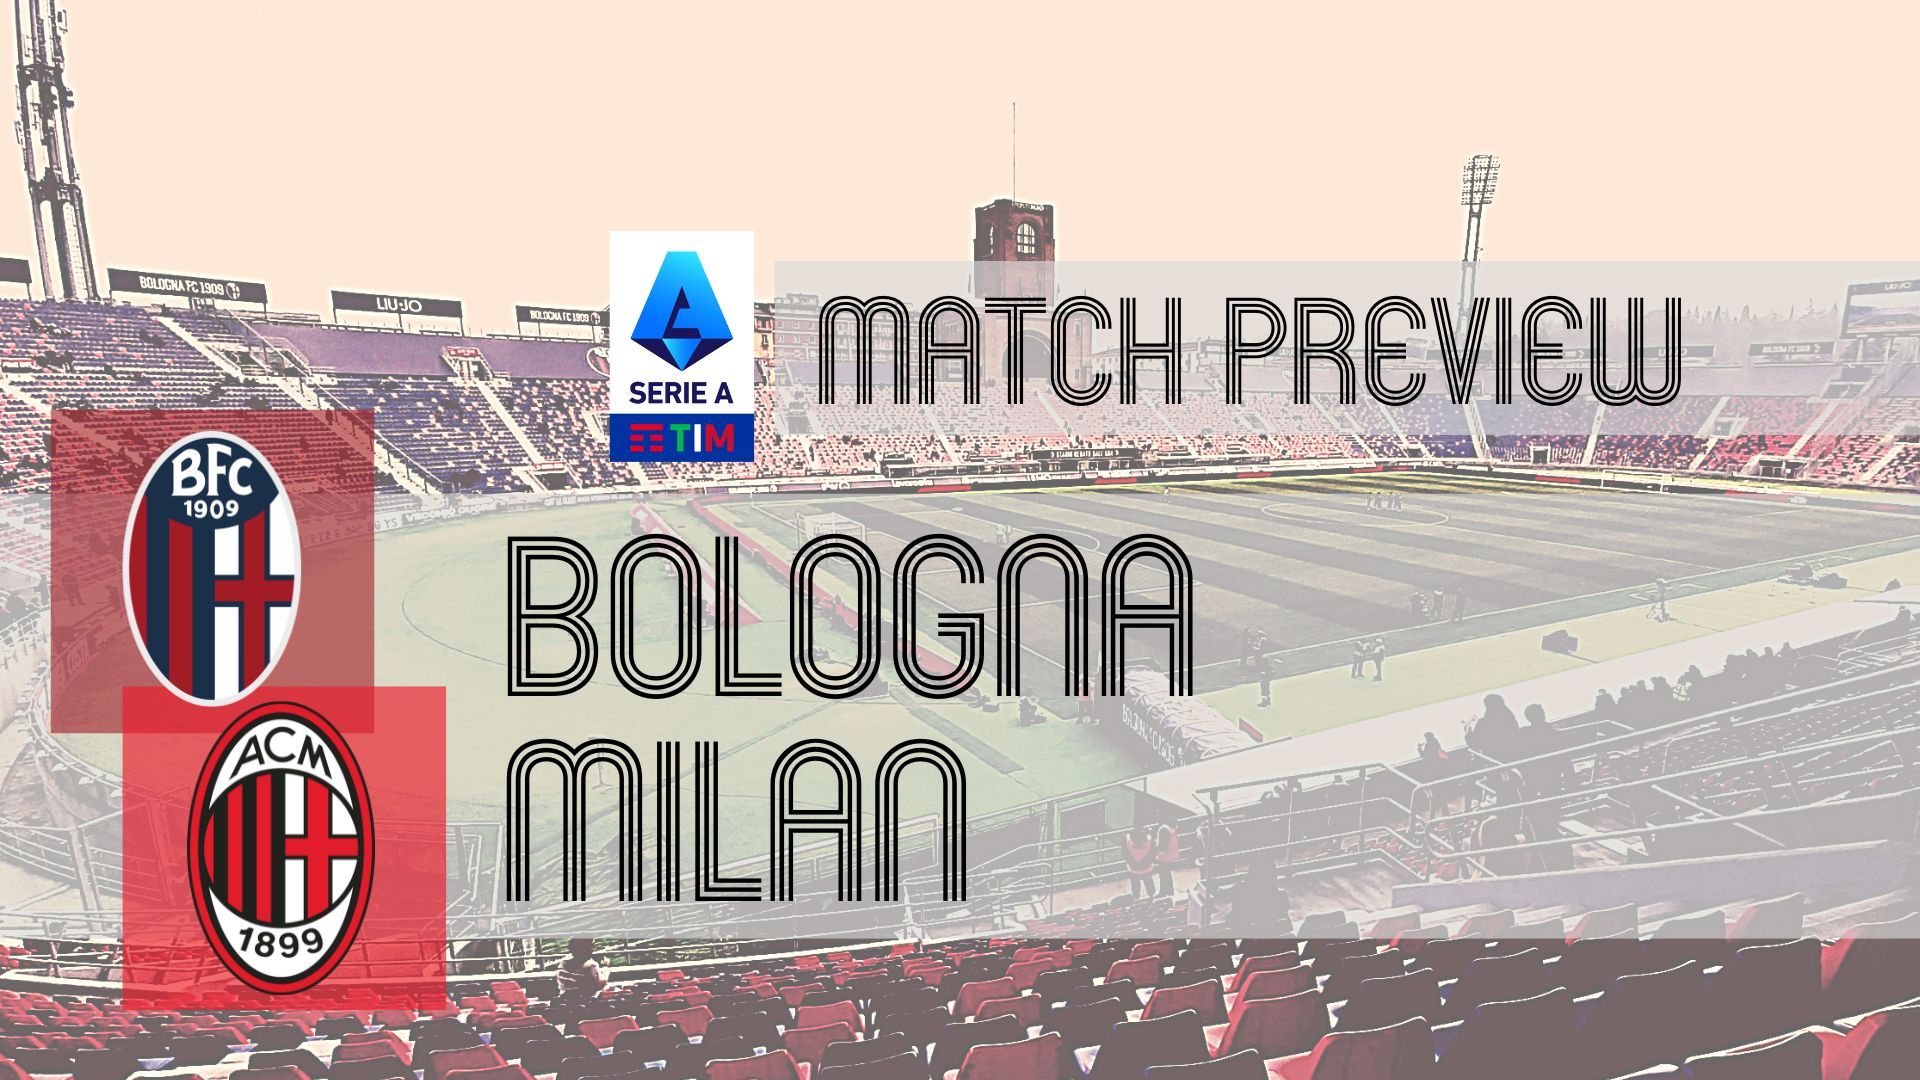 AC Milan VS Genoa CFC 1-0, Serie A TIM 2011/12, A.C. Milan